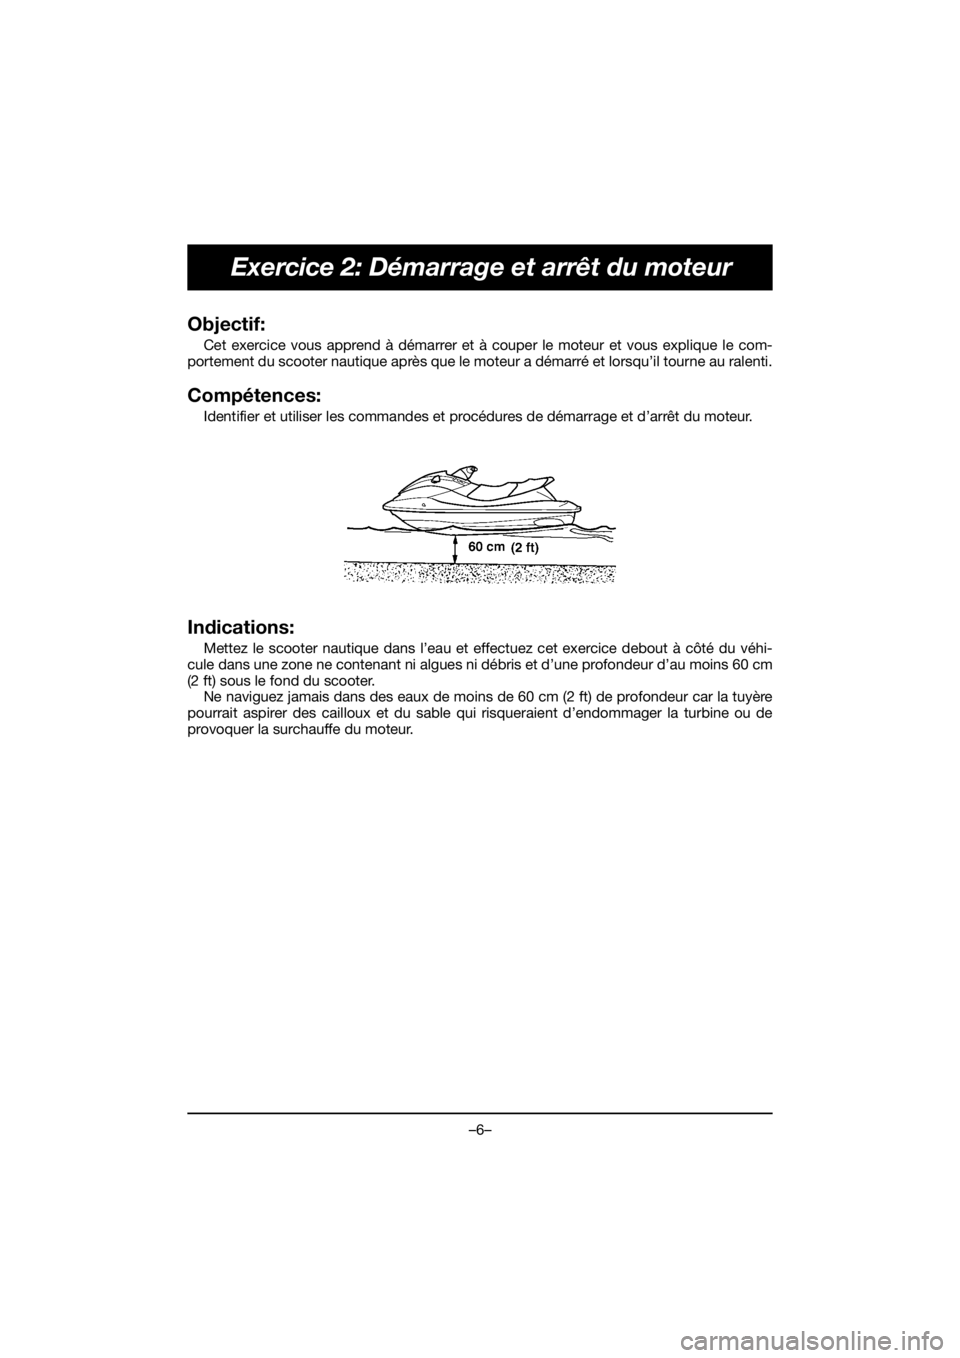 YAMAHA FJR1300 2019  Notices Demploi (in French) –6–
Exercice 2: Démarrage et arrêt du moteur
Objectif: 
Cet exercice vous apprend à démarrer et à couper le moteur et vous explique le com-
portement du scooter nautique après que le moteur 